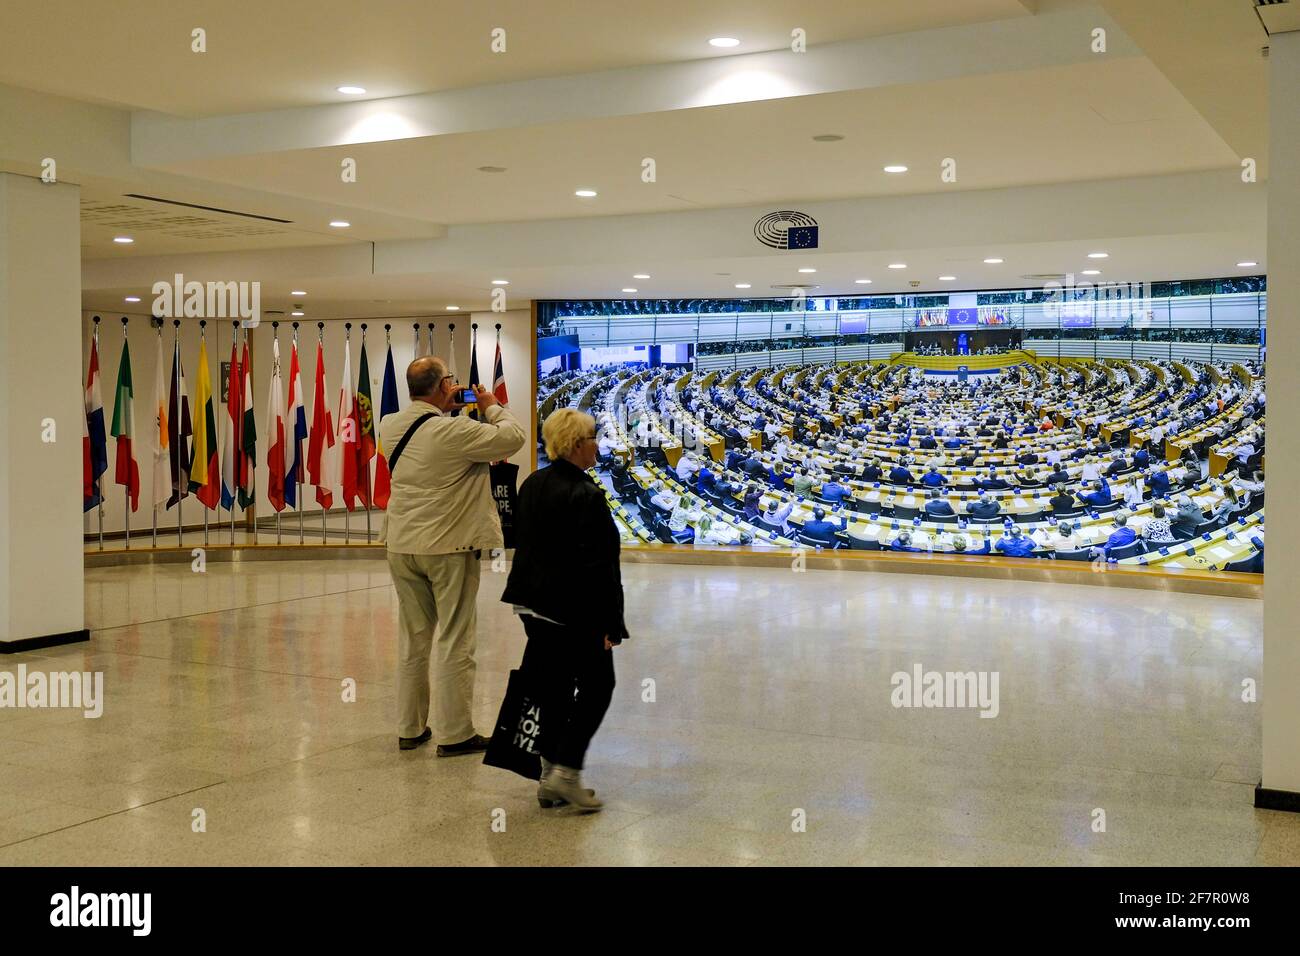 25.09.2019, Bruessel, Belgien - zwei Besucher in einem Vorraum des Plenarsaals waehrend einer Besichtigung des Europaeischen Parlaments in Bruessel Stock Photo